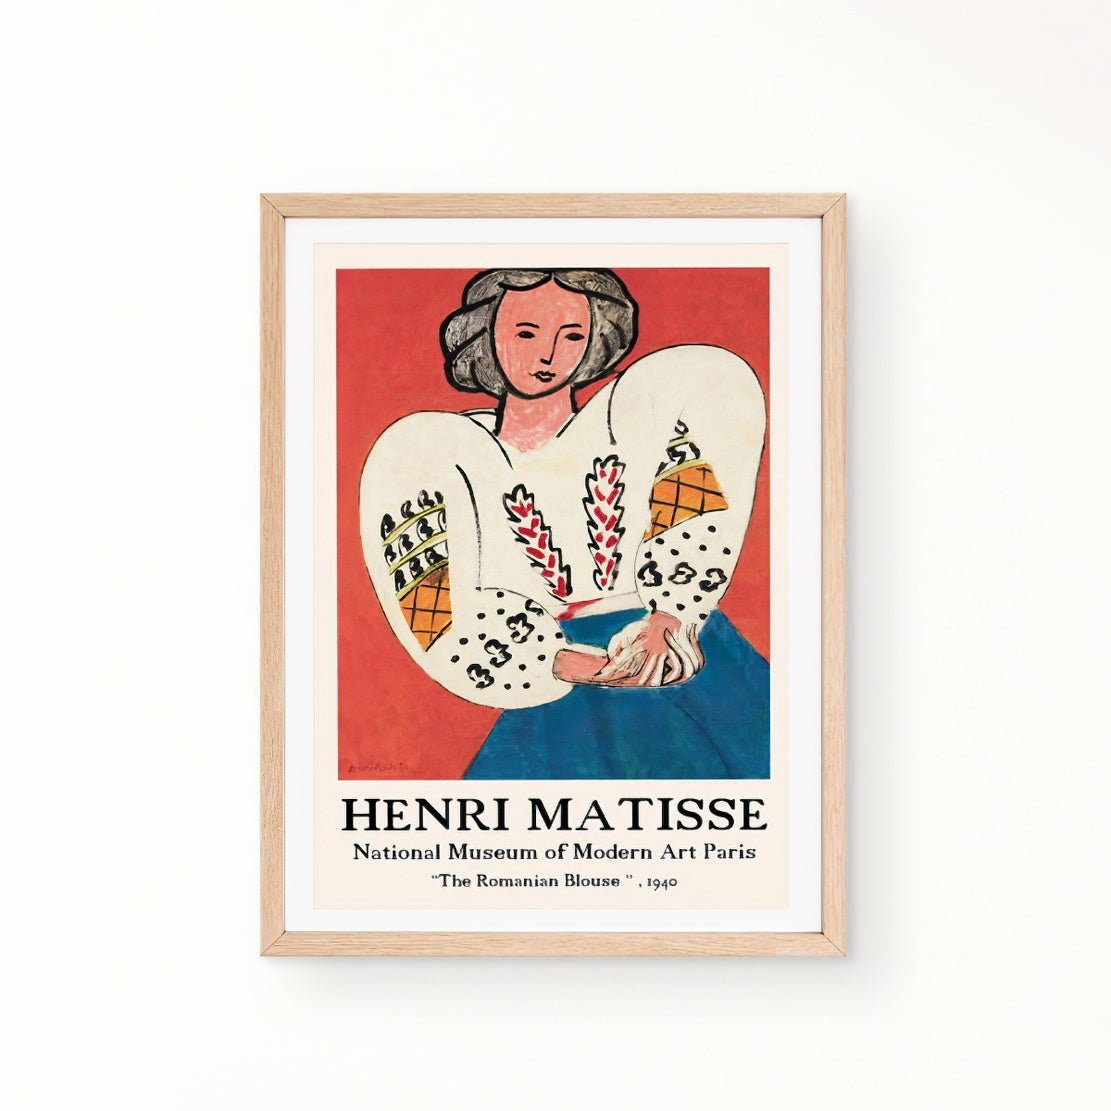 Henri Matisse, "The Romanian Blouse", 1940 art print framed poster